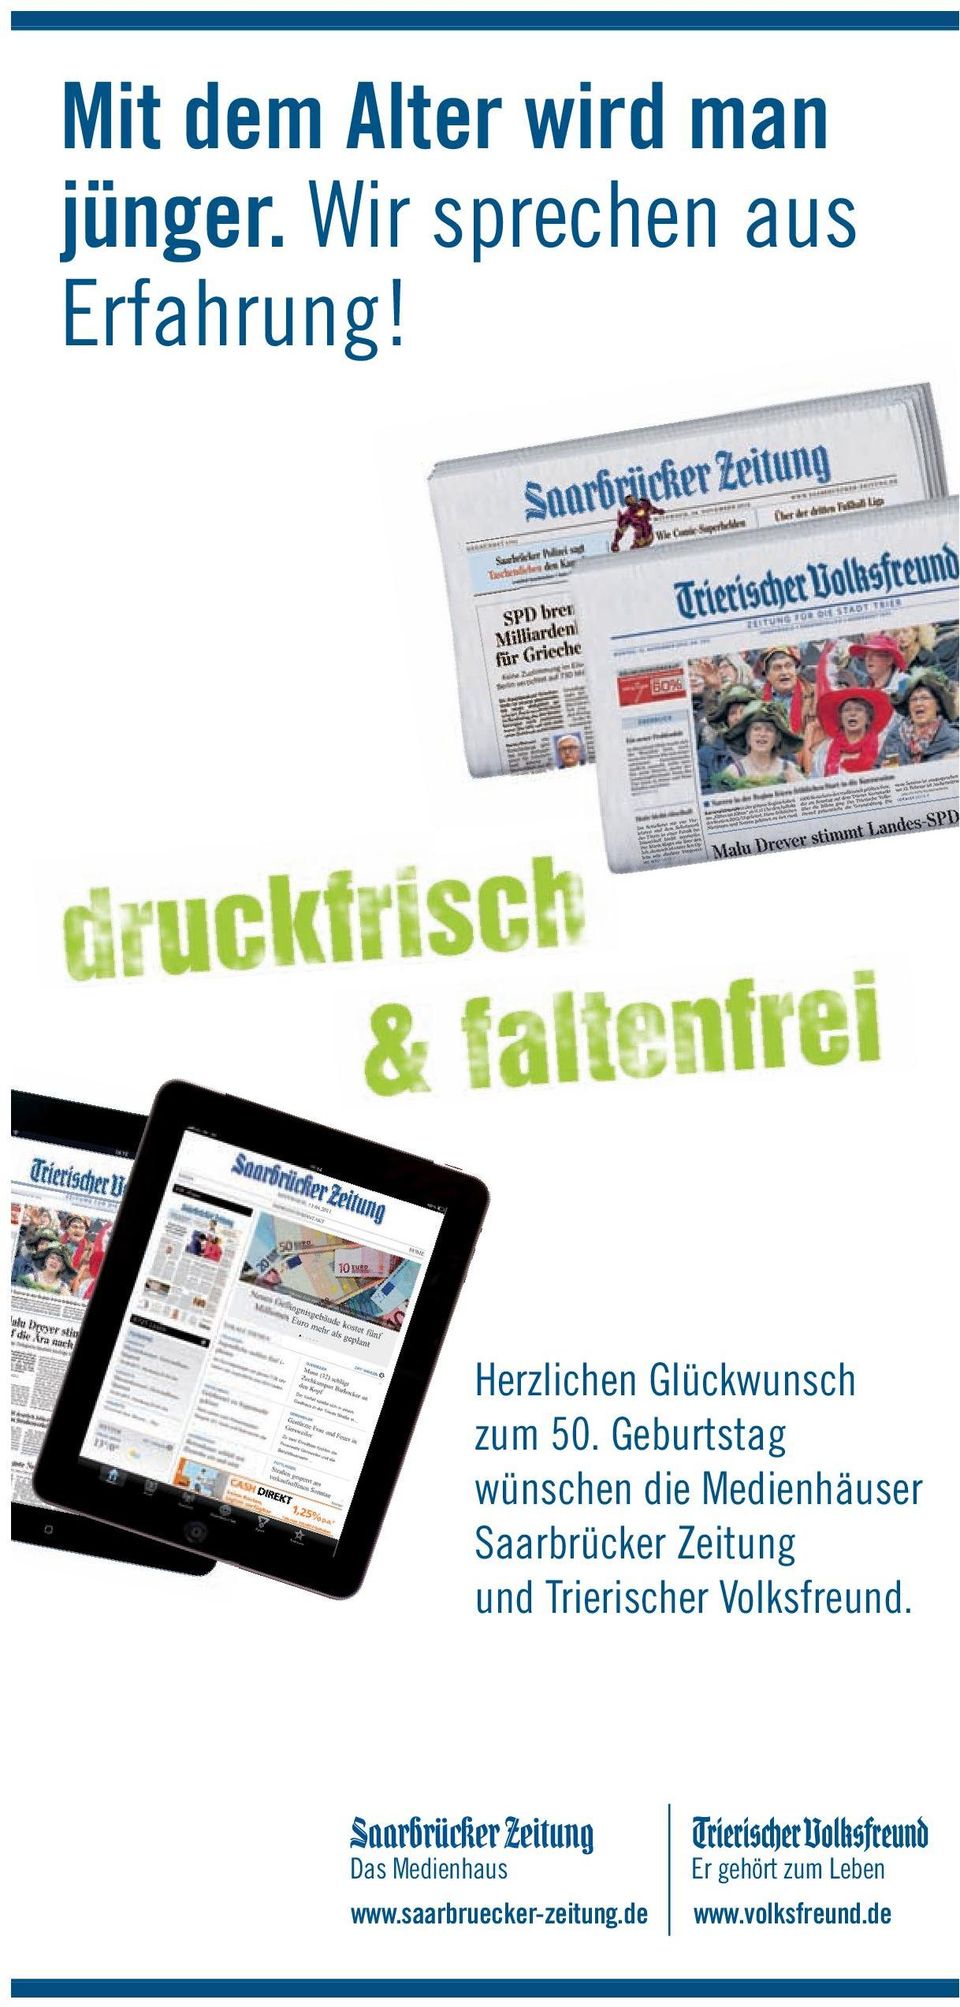 Geburtstag wünschen die Medienhäuser Saarbrücker Zeitung und